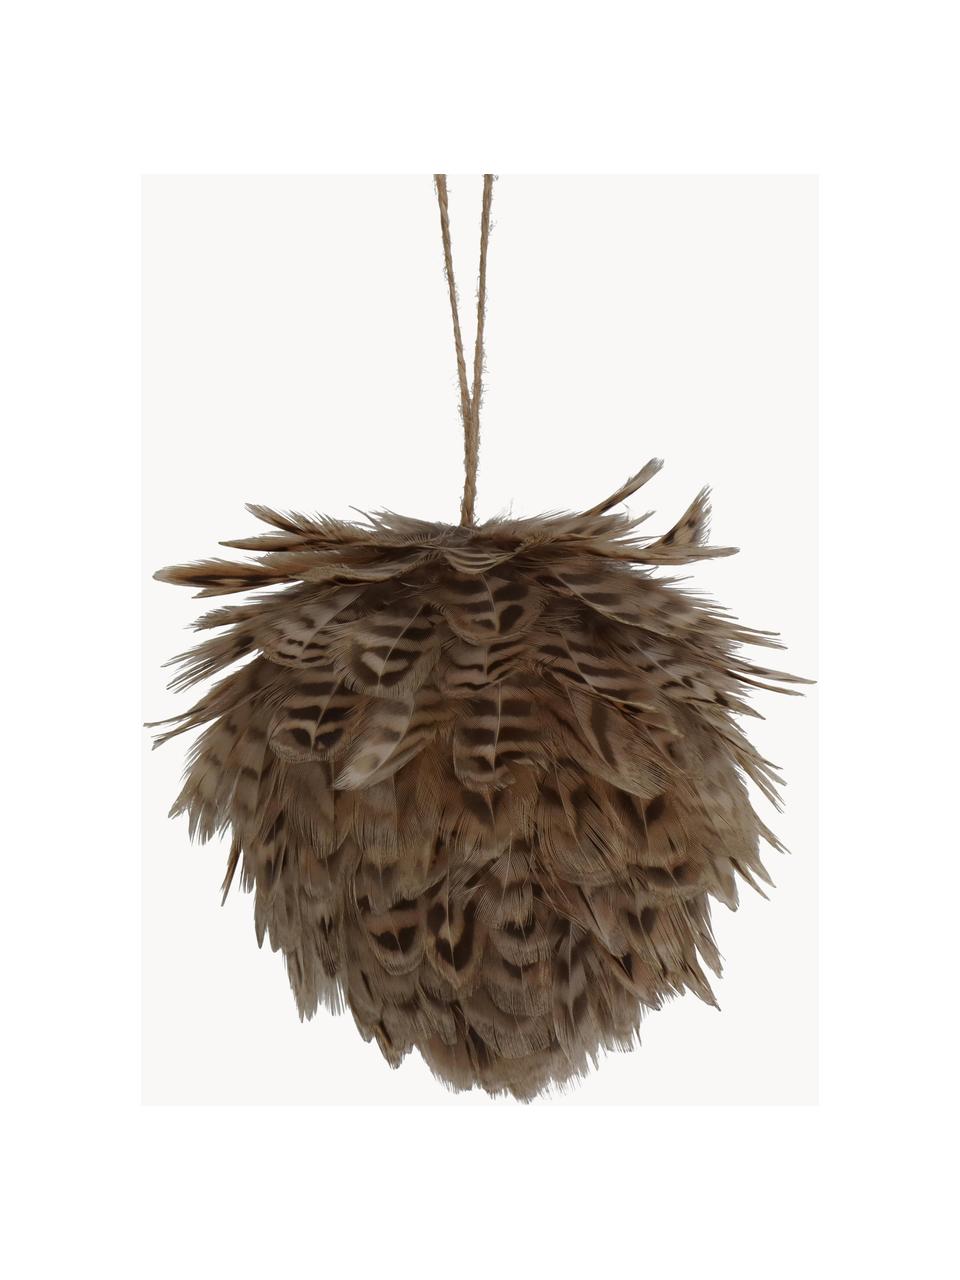 Ozdoby na stromeček Feather Ball, 2 ks, Peří, Odstíny hnědé, Ø 11 cm